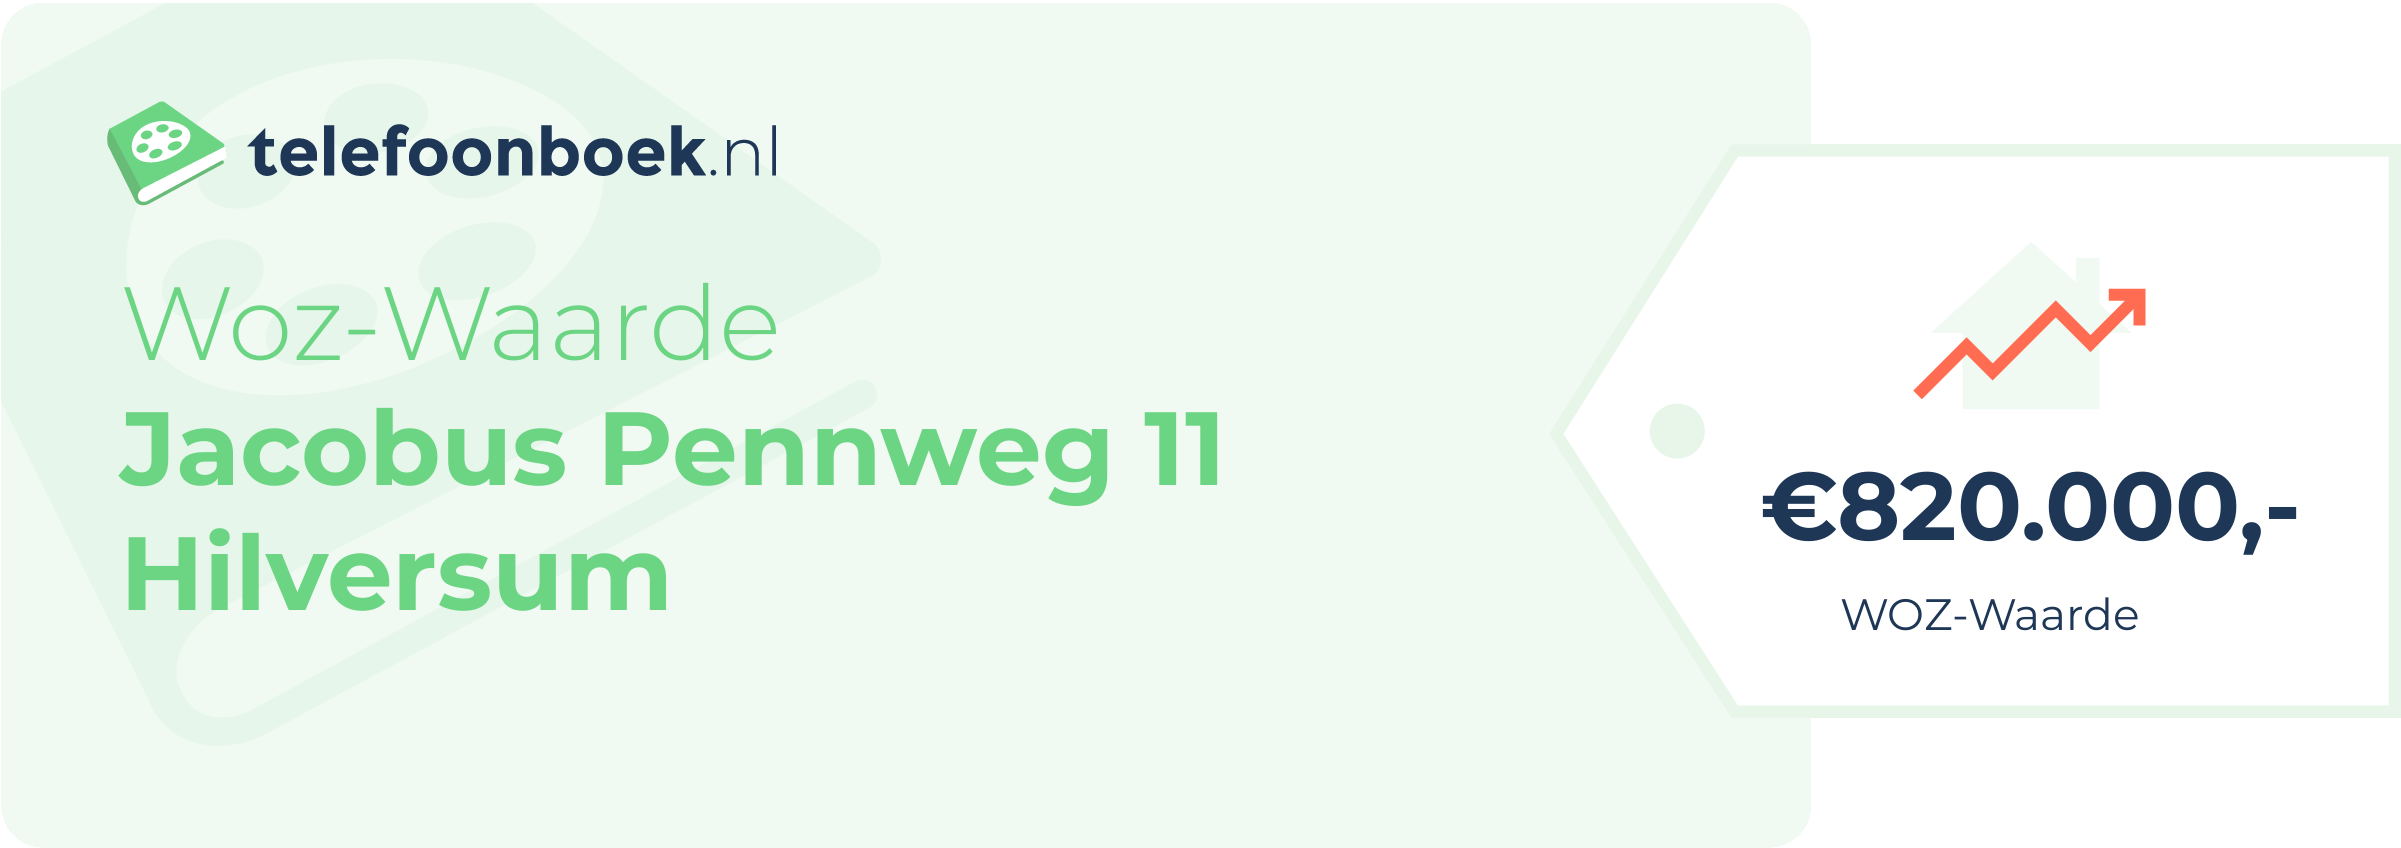 WOZ-waarde Jacobus Pennweg 11 Hilversum